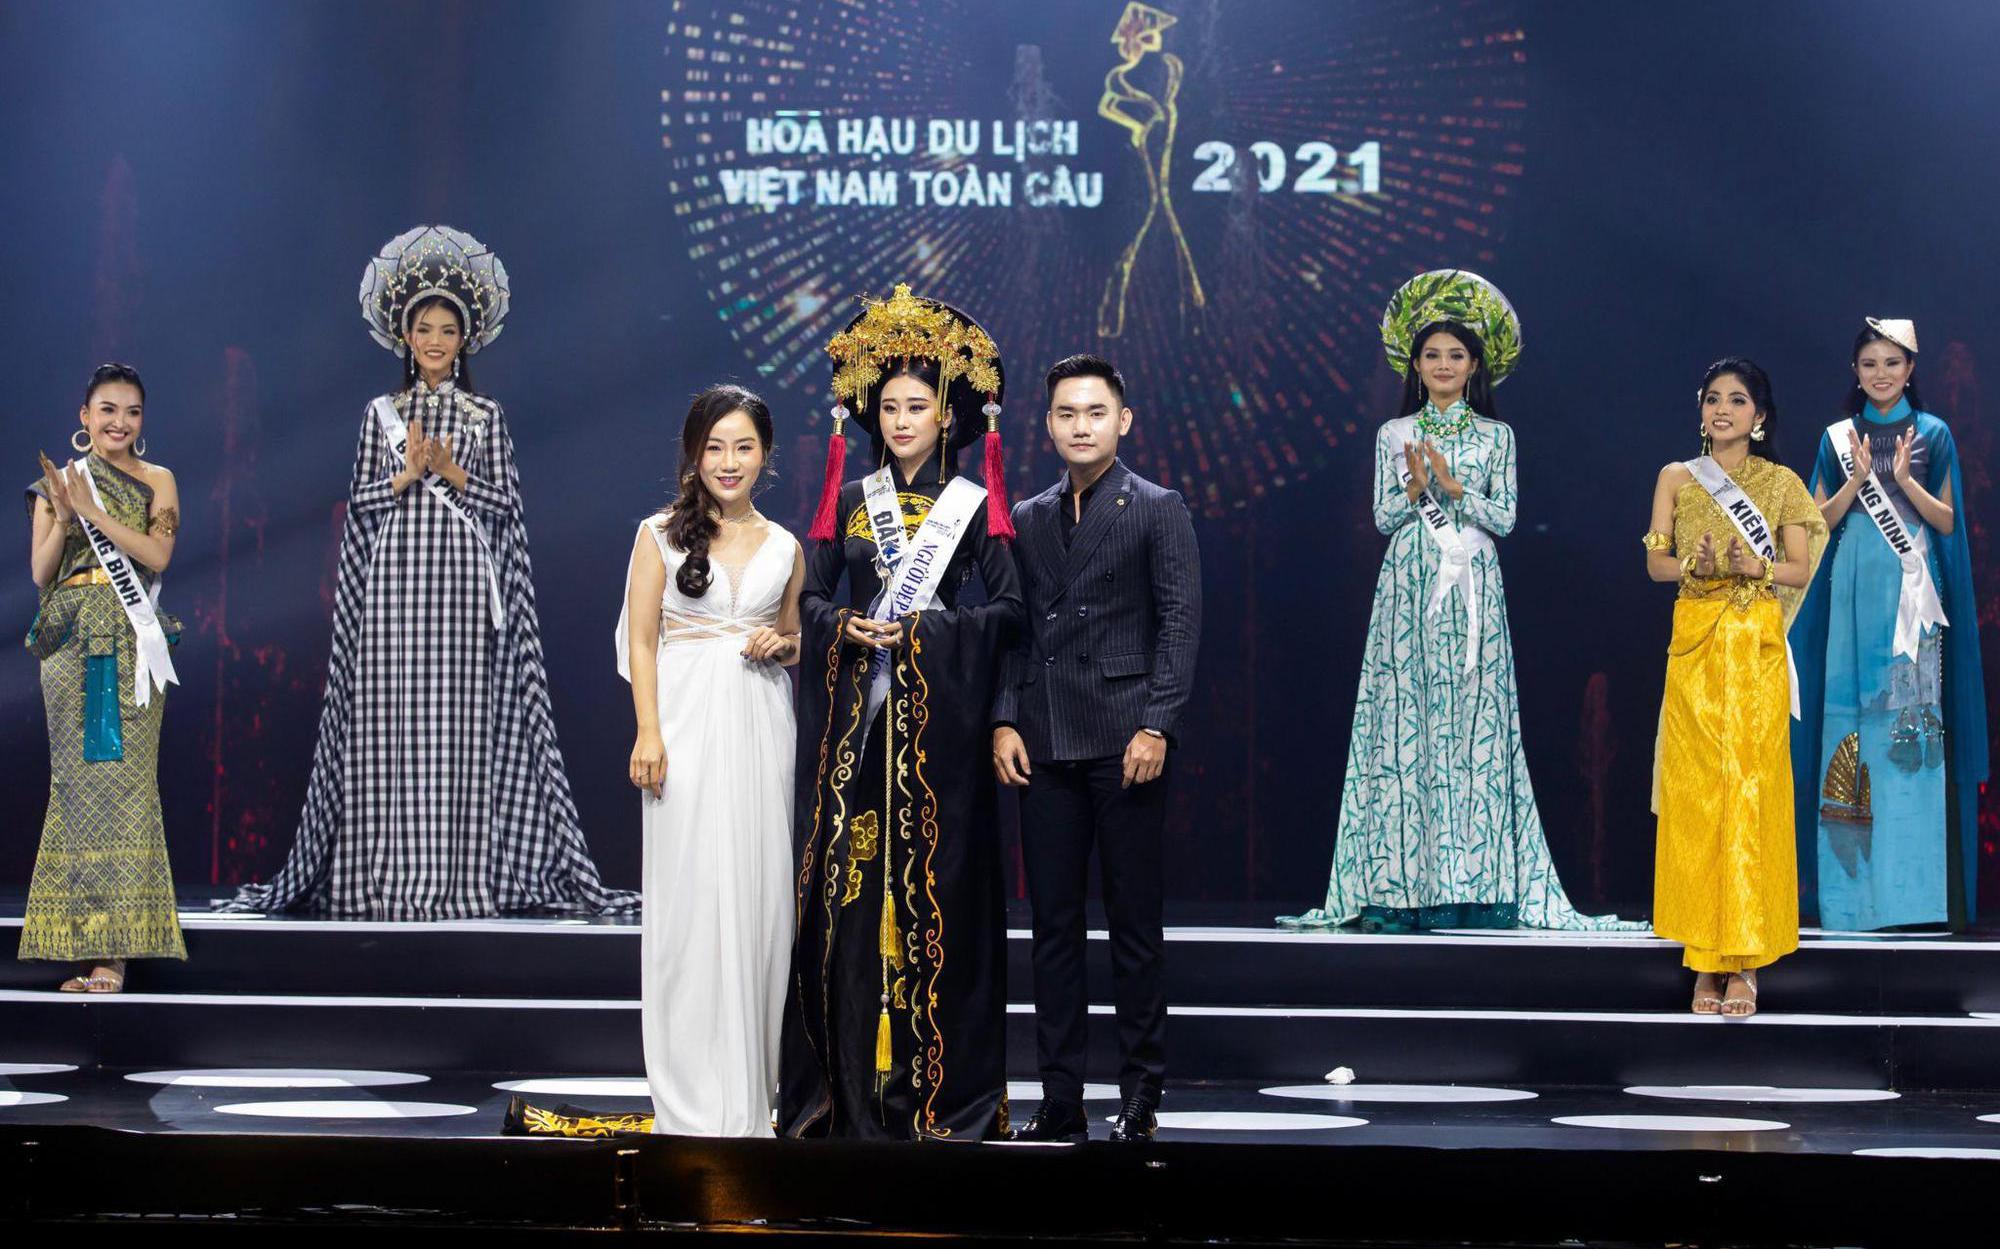 CEO Huy Nguyễn: Wii - The House of Diamonds vinh dự khi tài trợ cho Hoa hậu Du lịch Việt Nam Toàn cầu